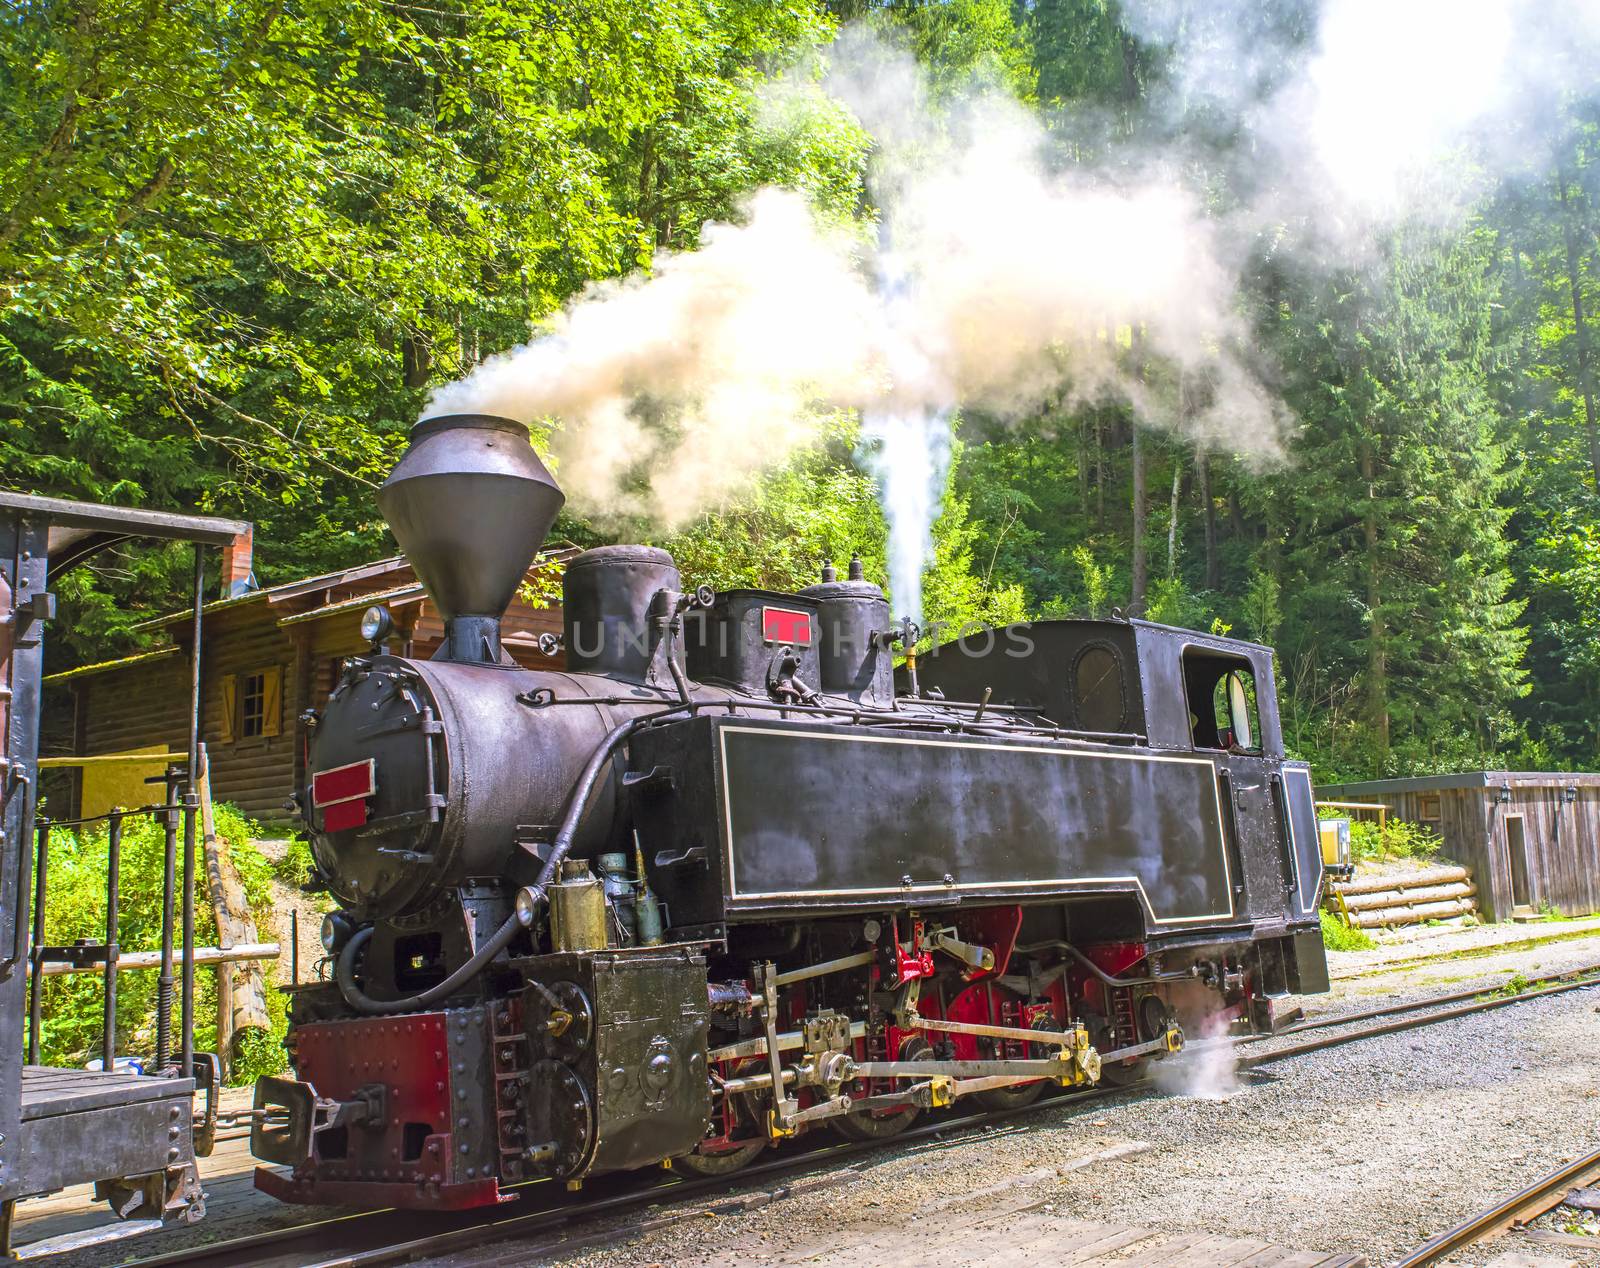 Aged steam engine locomotive working in summer forest